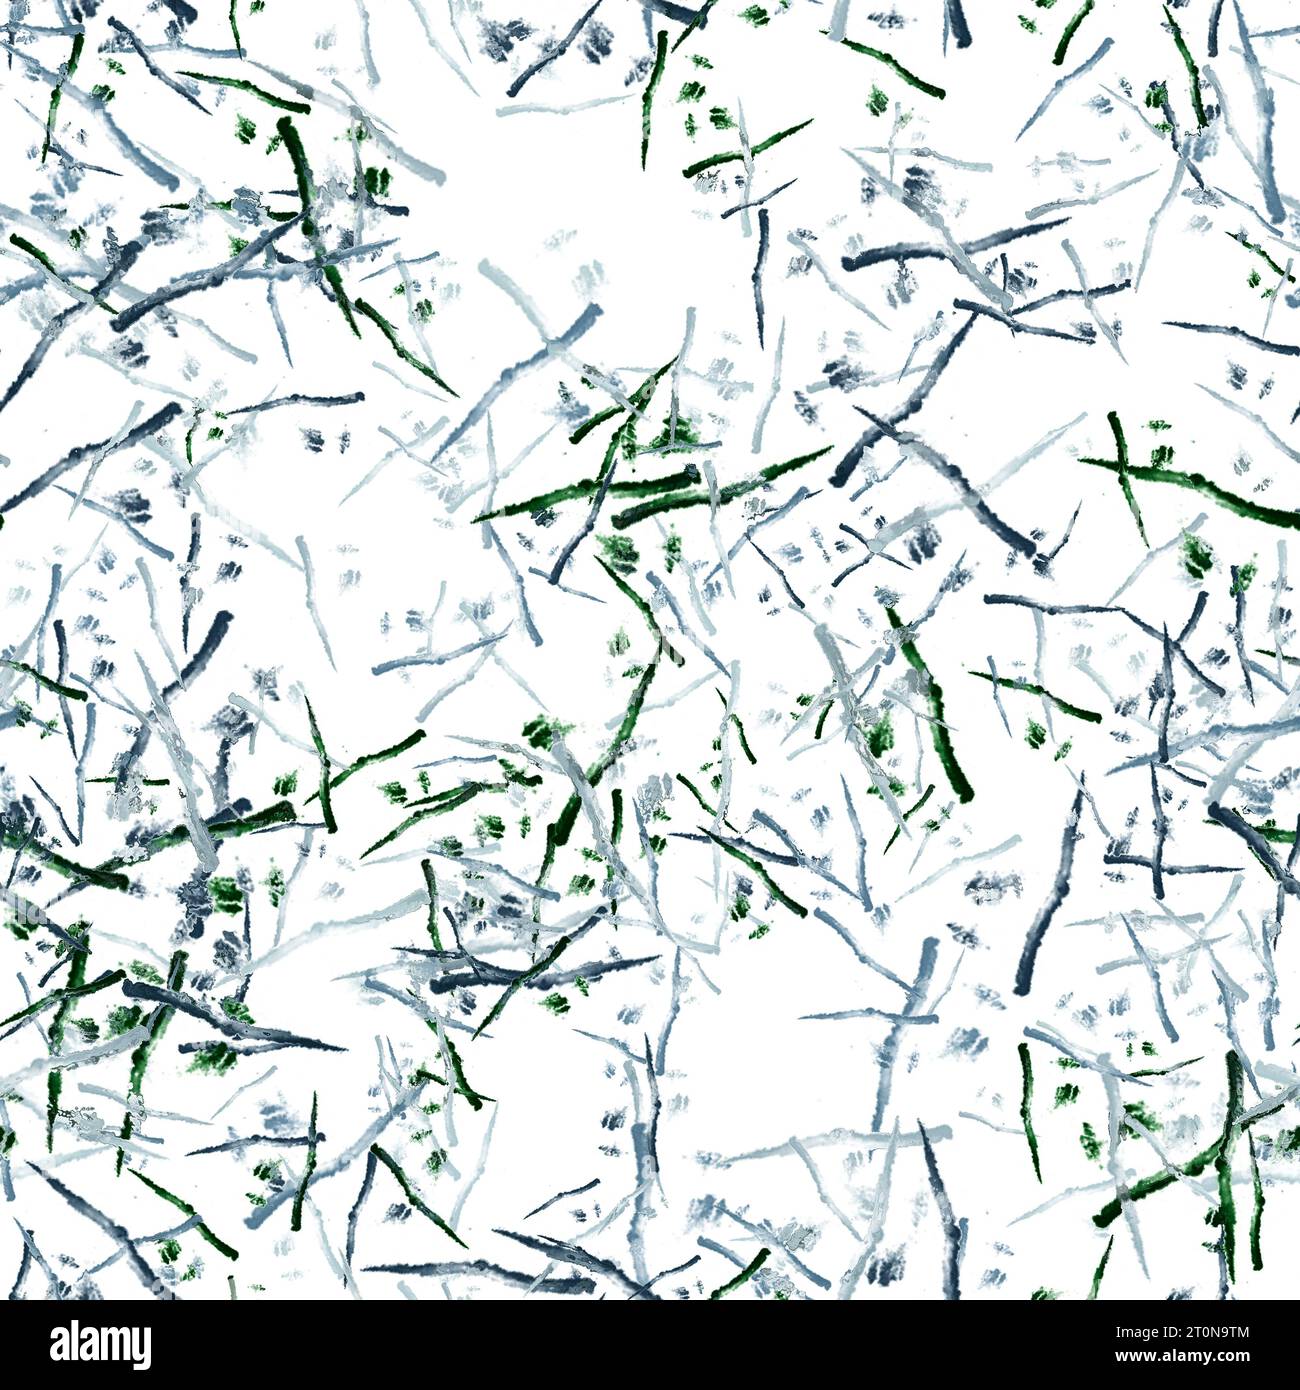 Tratti di pennello ad acquerello sottili astratti. Texture giapponese. Colori blu grigio e verde sullo sfondo bianco. Ripetizione senza cuciture Foto Stock